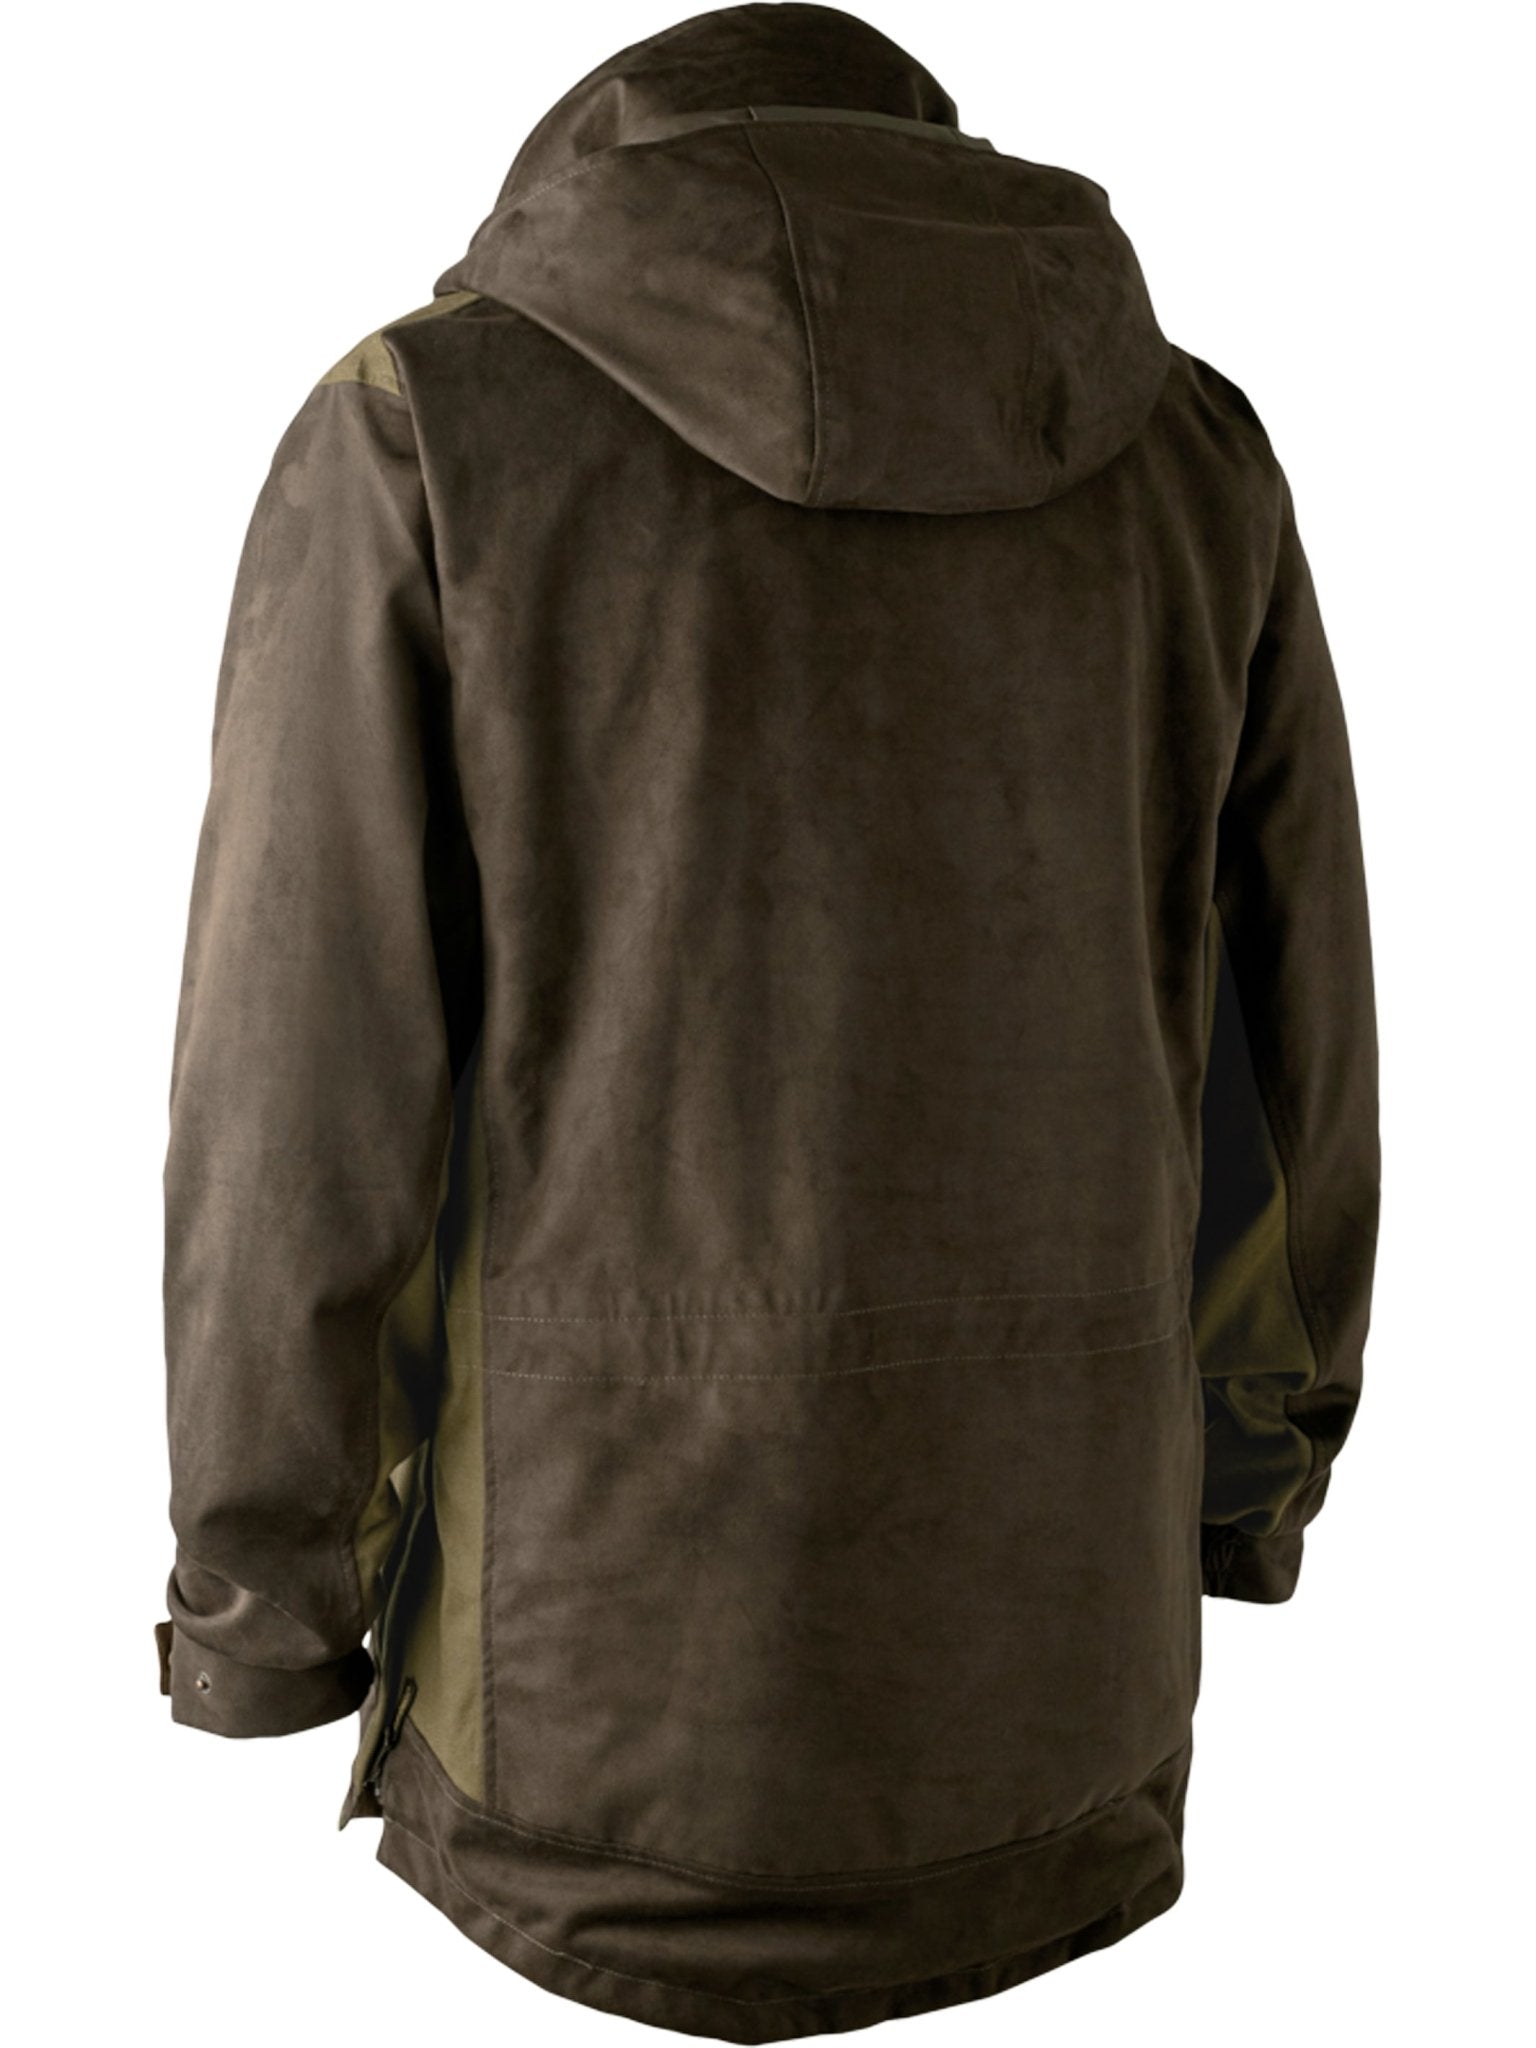 4elementsclothingDeerhunterDeerhunter - waterproof Smock Mens coat and jacket Explore, Breathable and taped seamsOuterwear5778-552-48